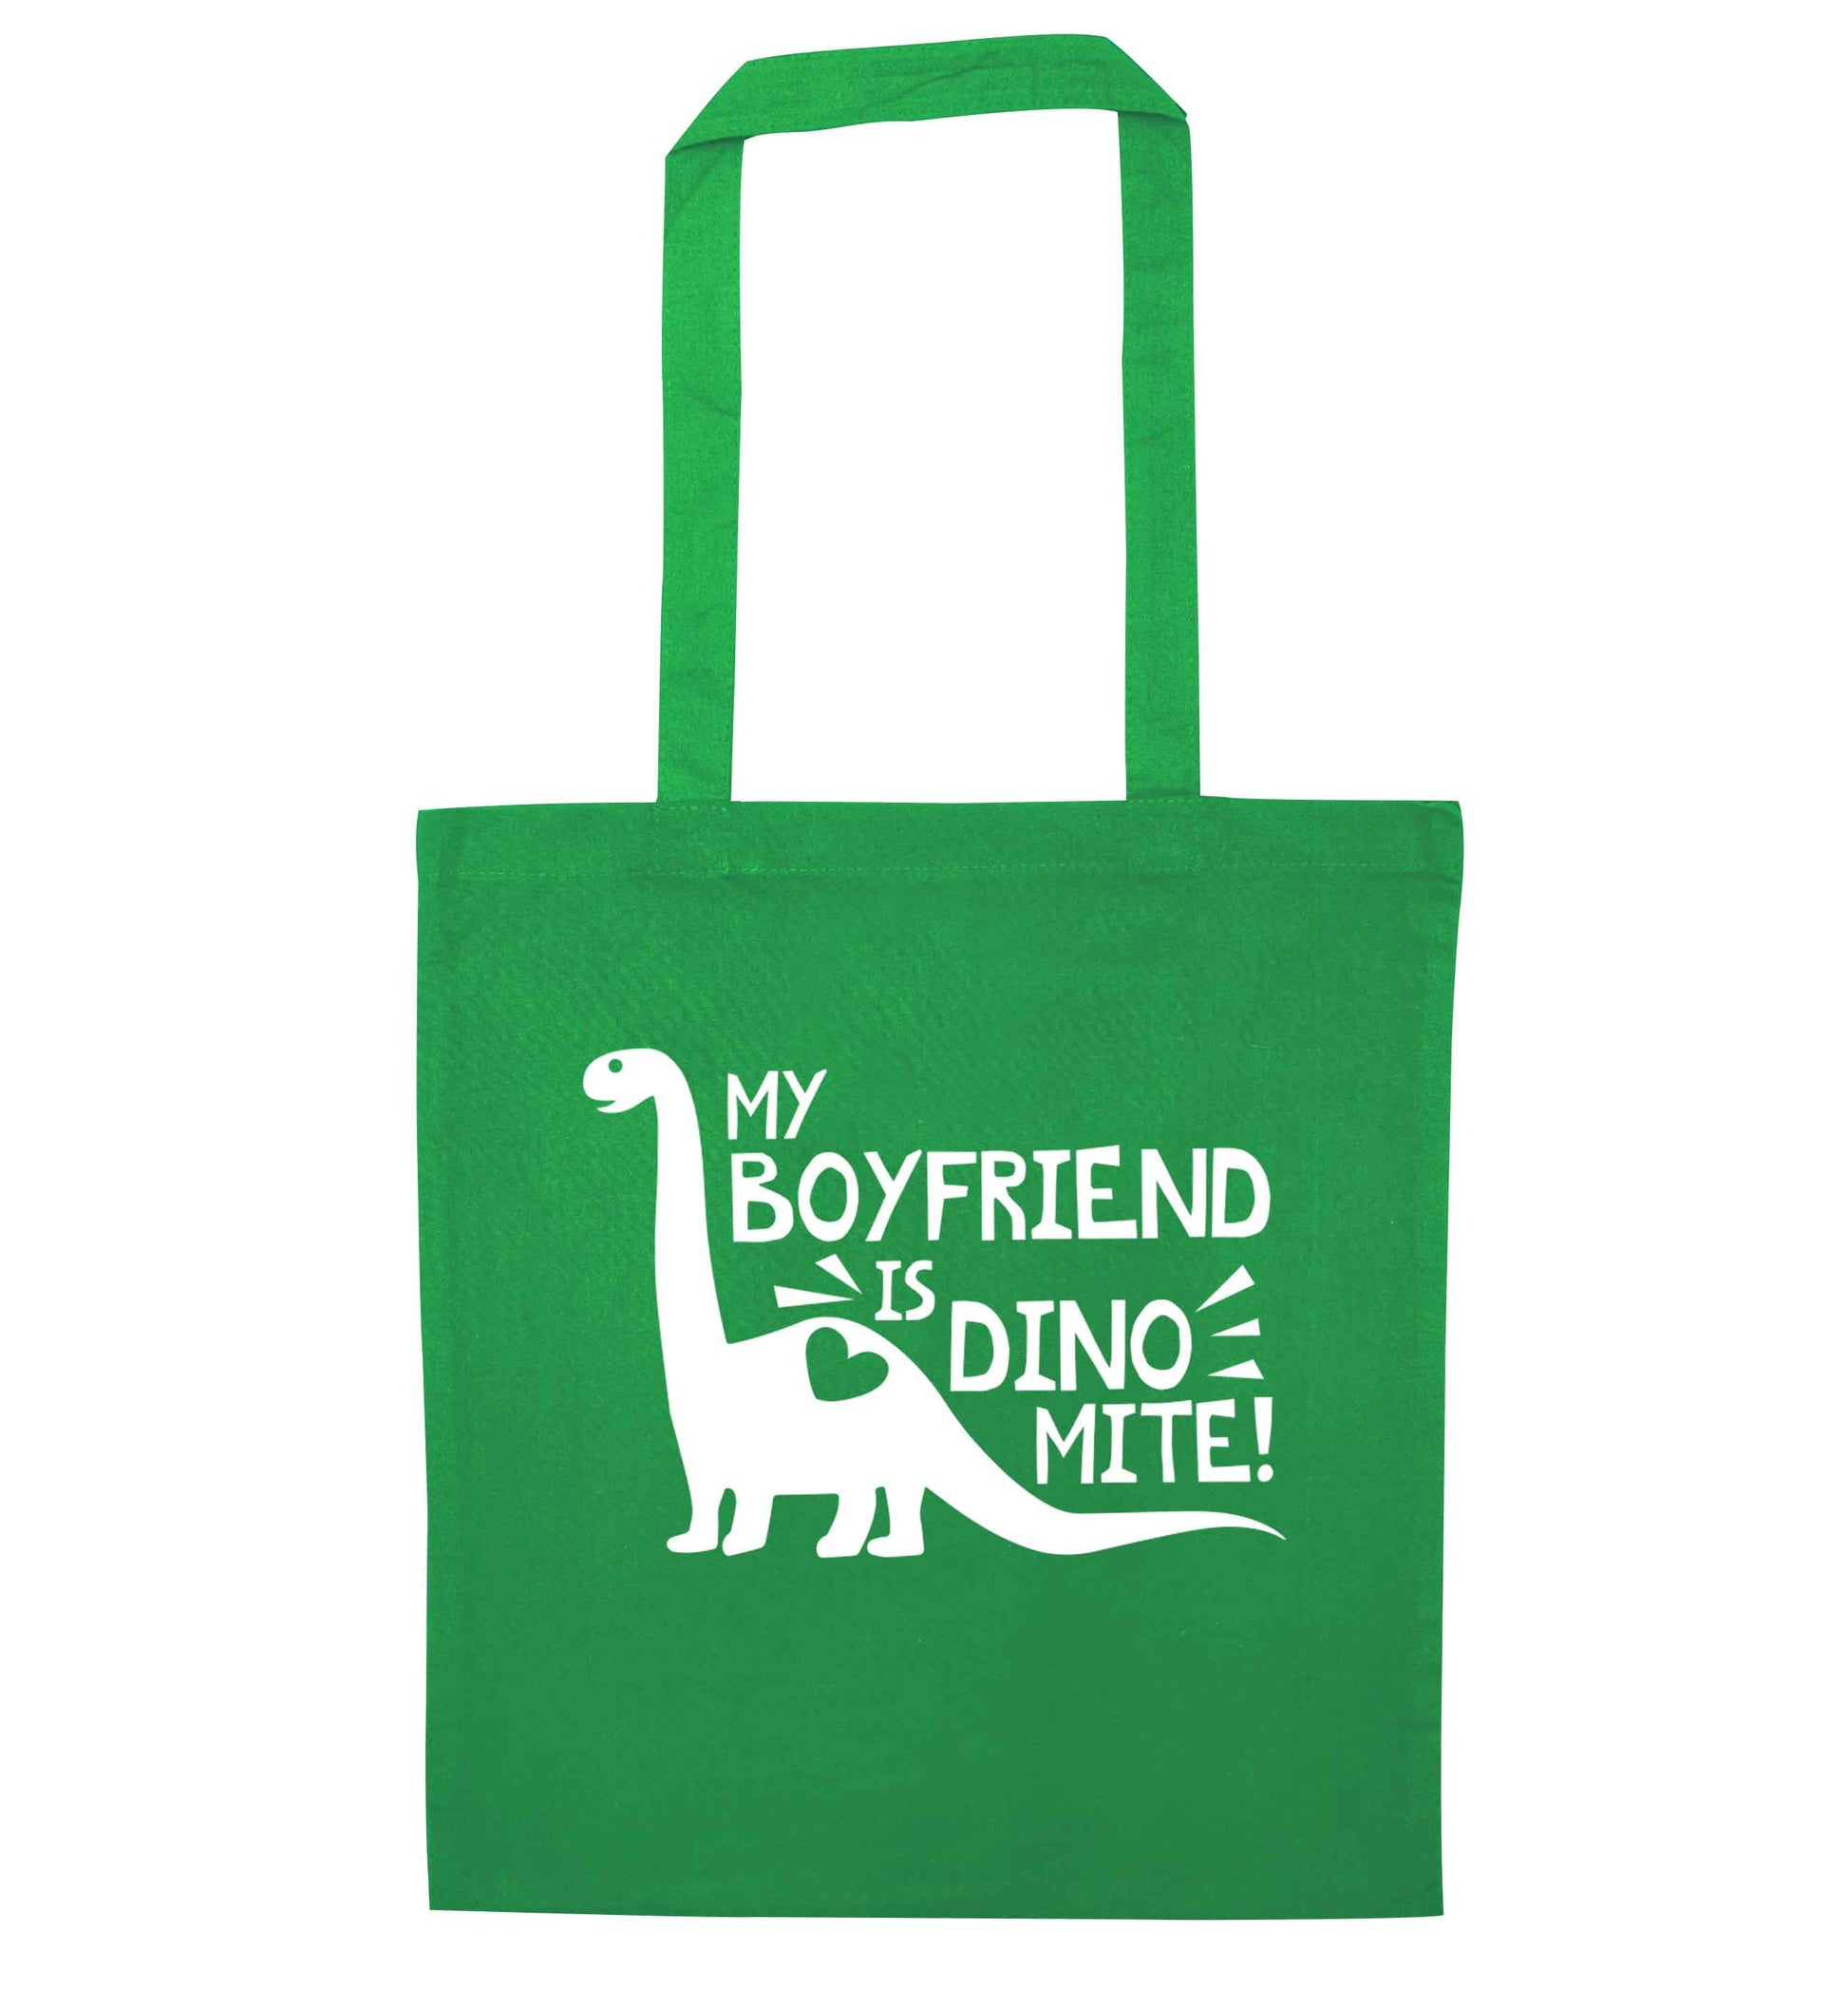 My boyfriend is dinomite! green tote bag